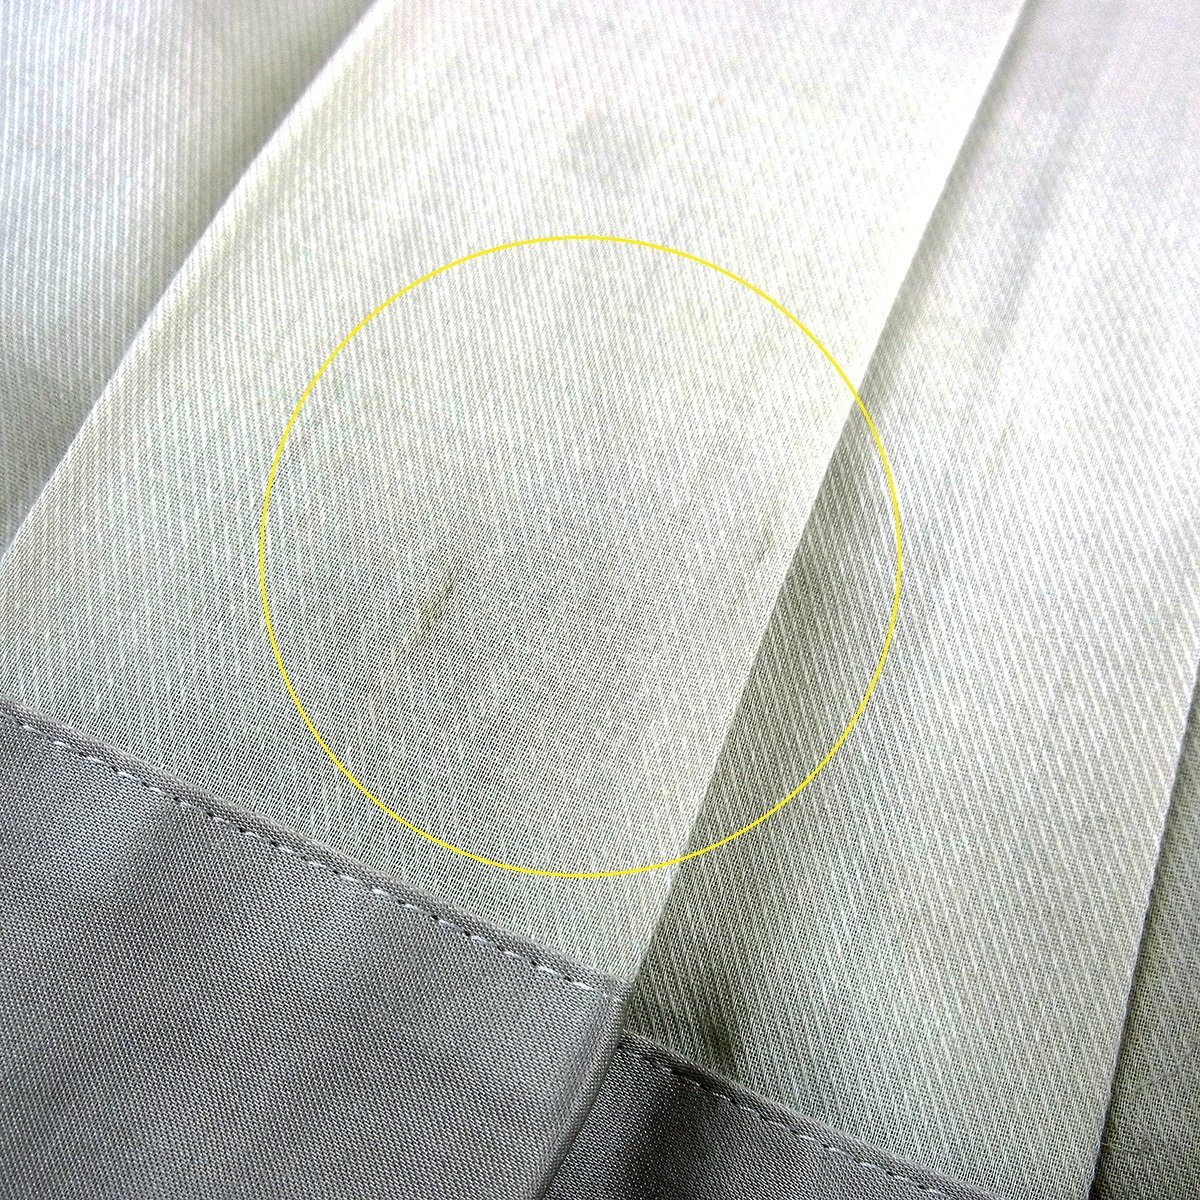  Burberry юбка в складку одноцветный простой серый серия хлопок 57% полиэстер 43% указанный размер :36 BURBERRY LONDON =